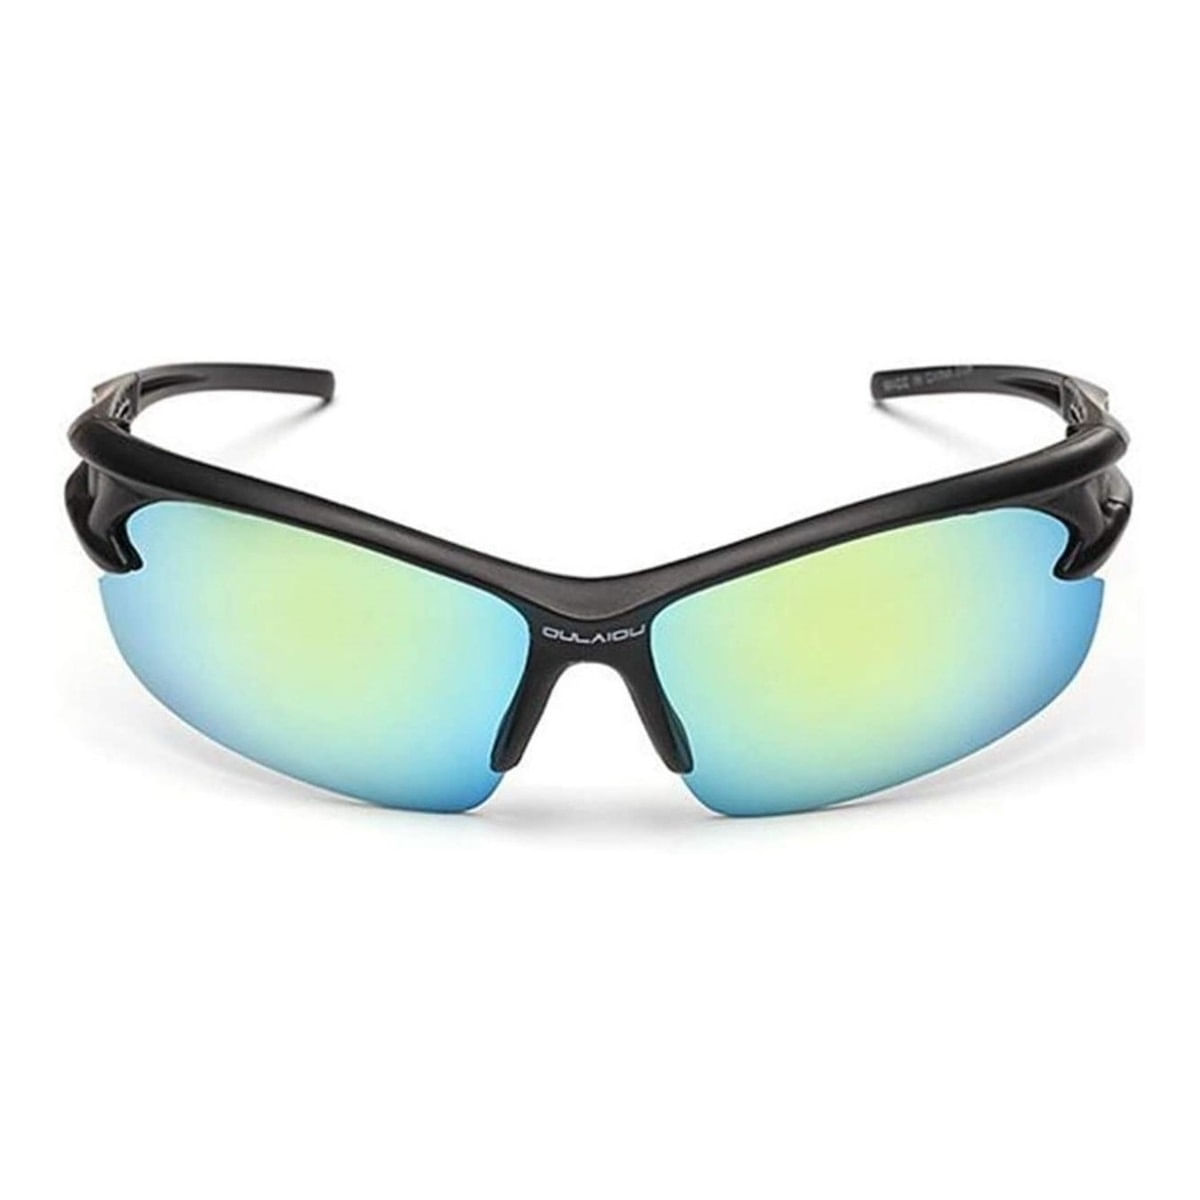 Oculos-Bike-Ciclismo-Corrida-Protecao-UV-Lentes-Azul-Espelhada---990567--1-